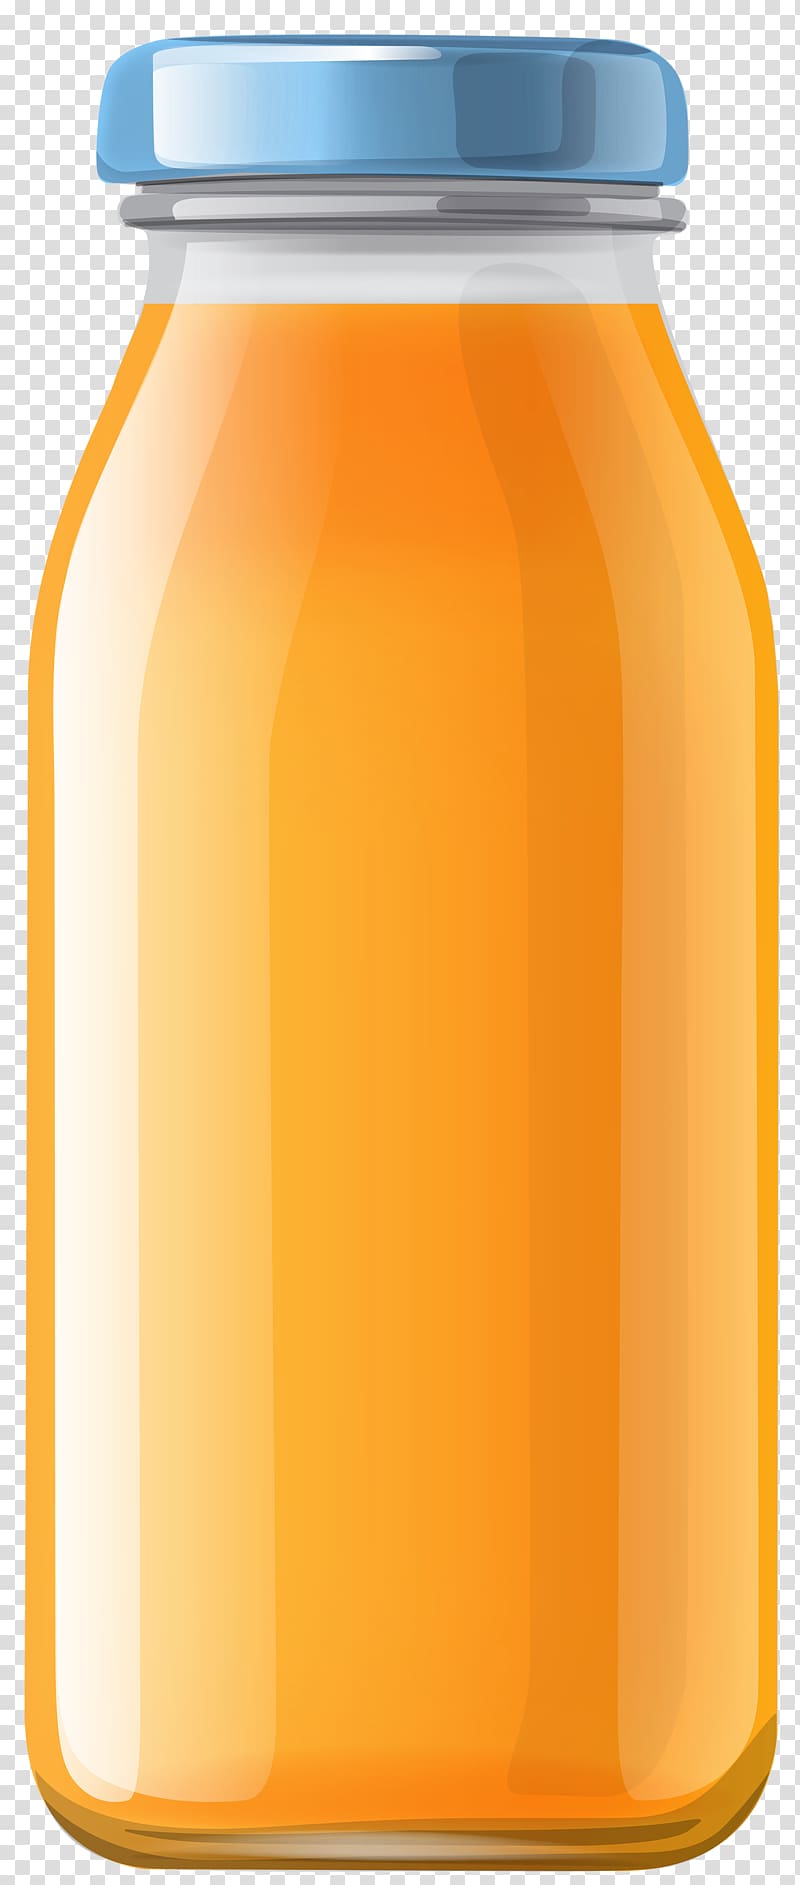 jar clipart juice